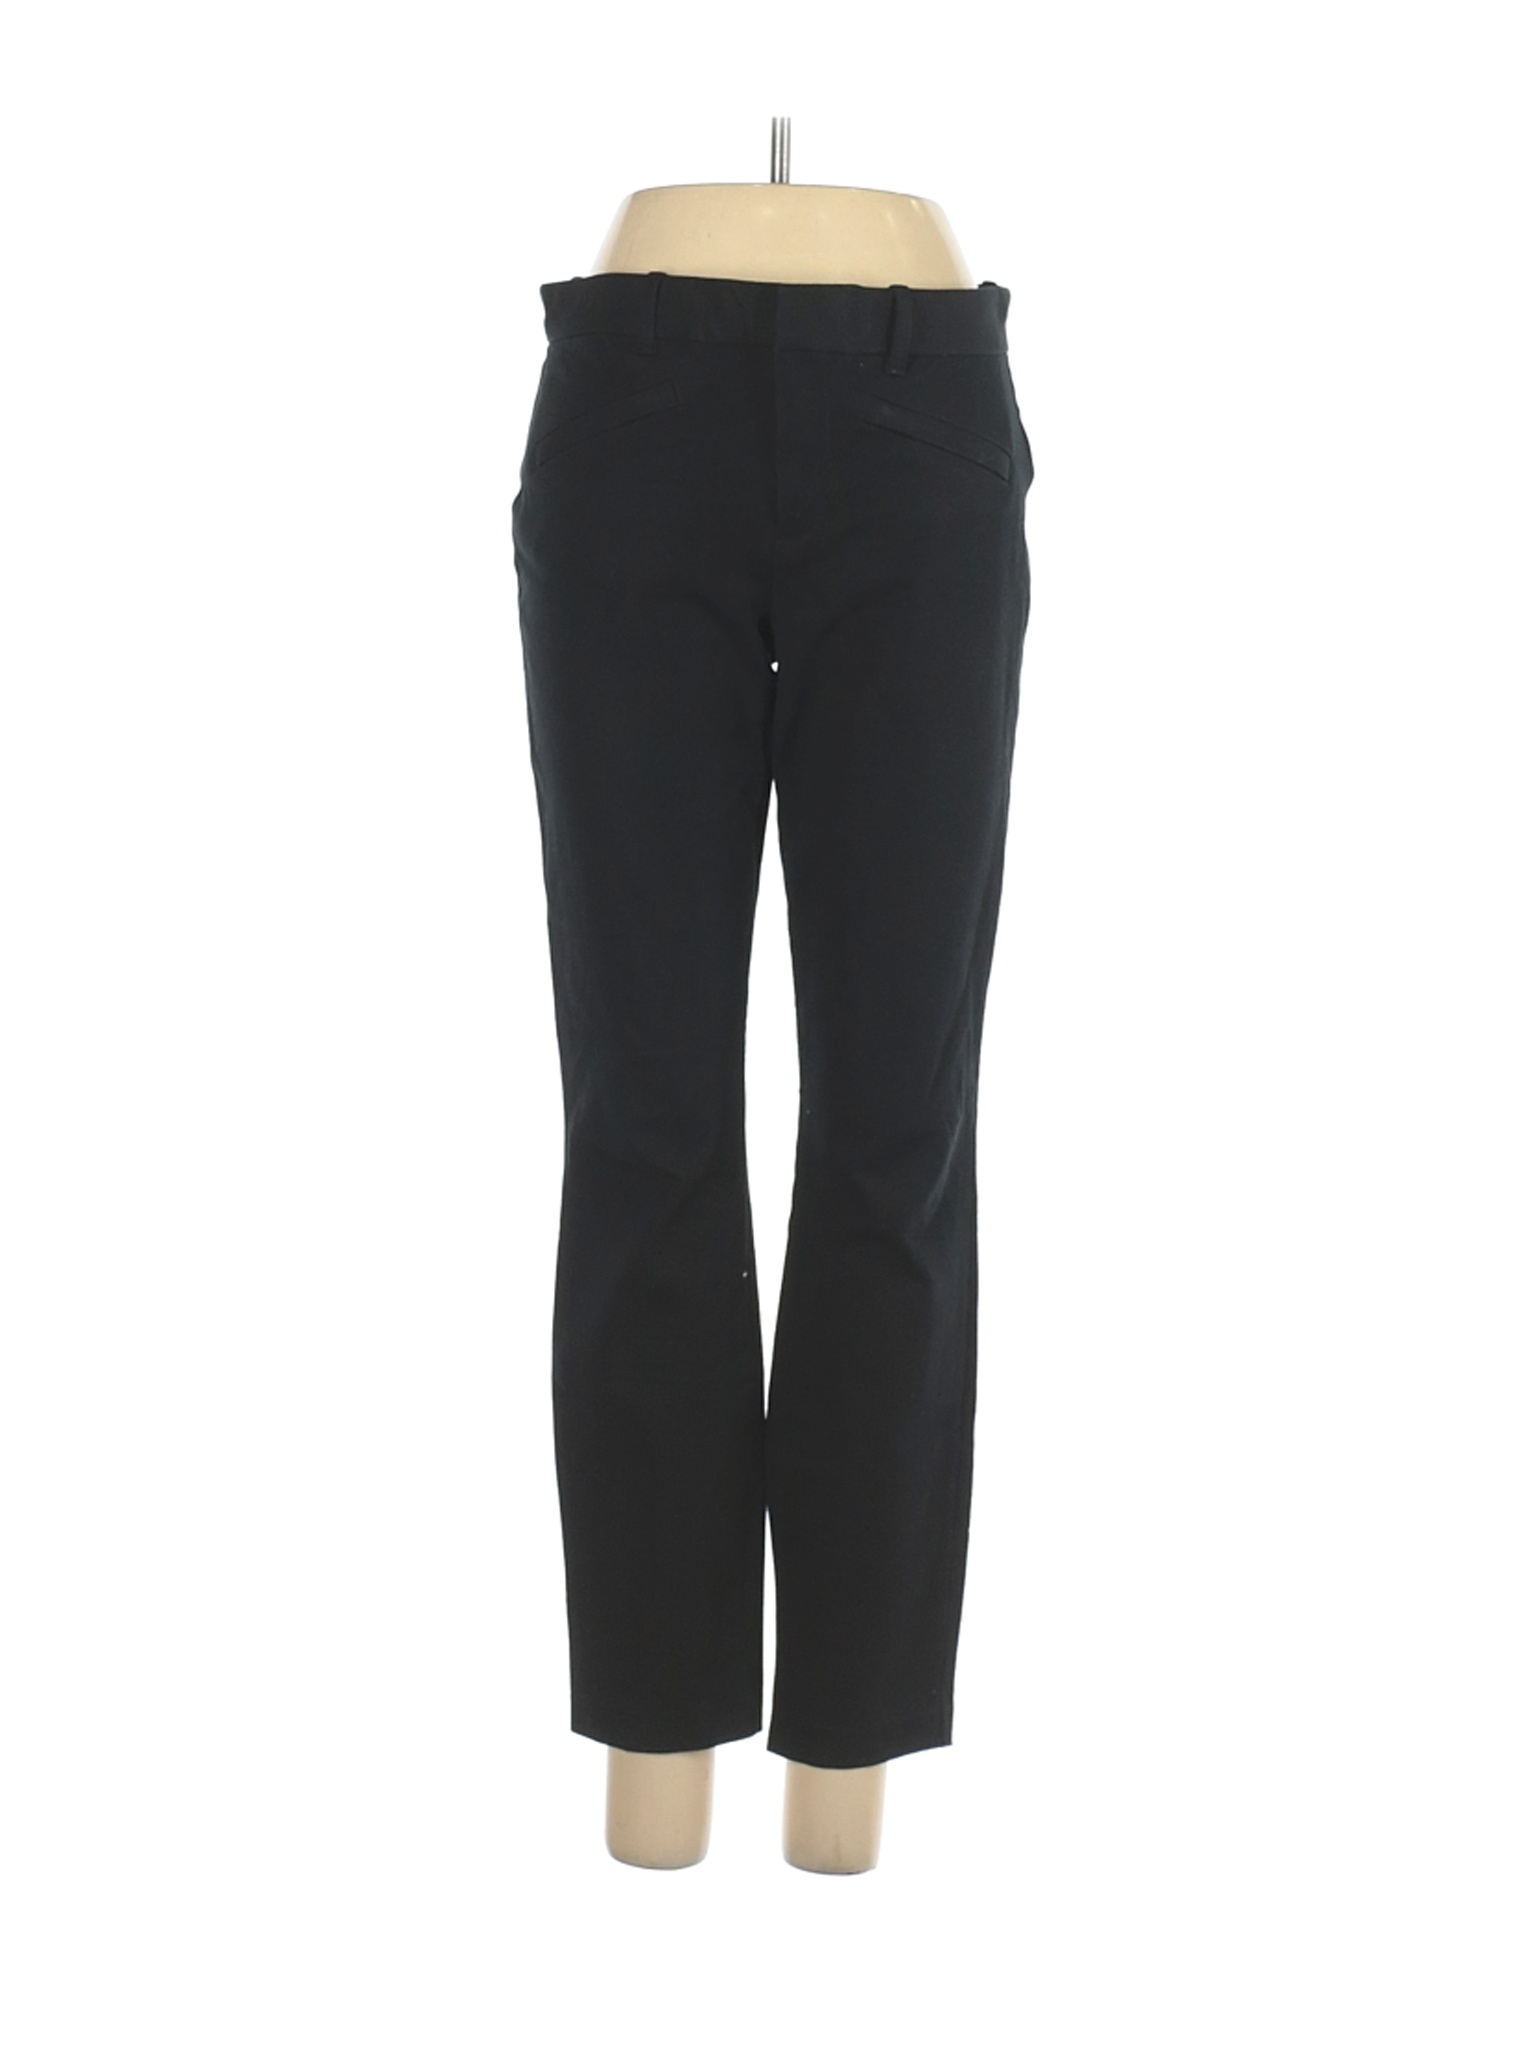 Gap Women Black Dress Pants 4 | eBay